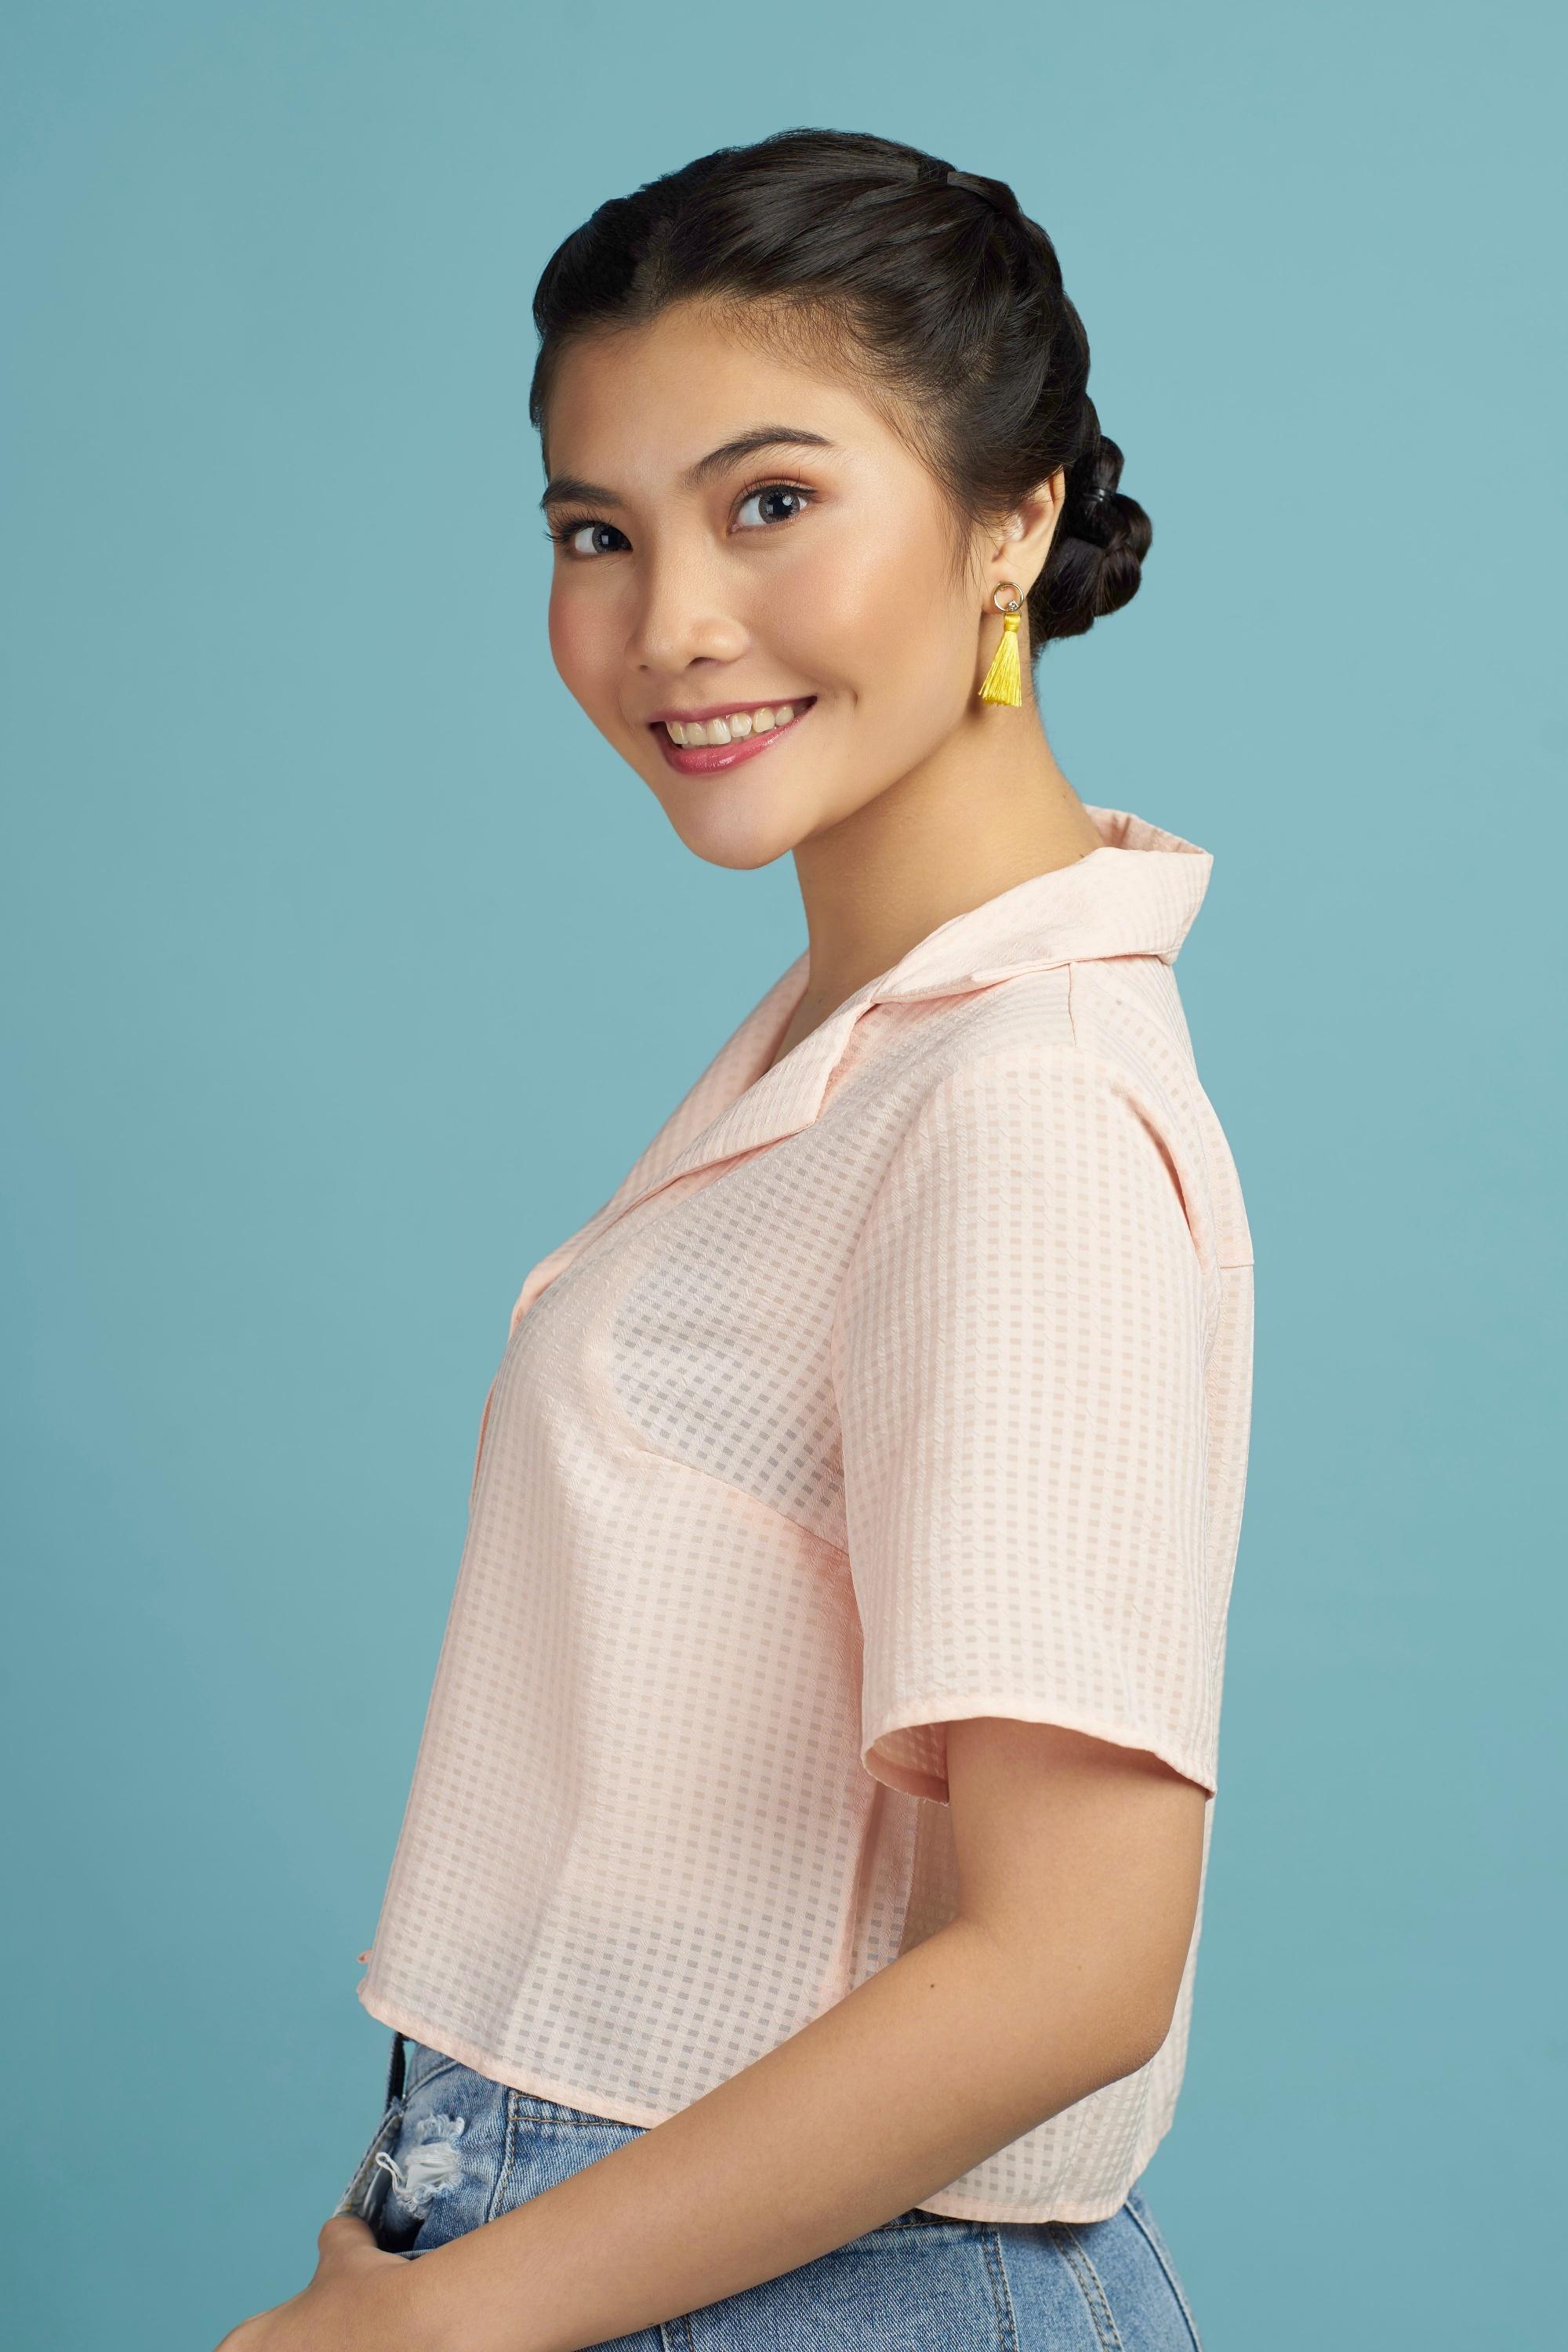 Asian woman with a Double Dutch braid bun hairstyle wearing a peach top